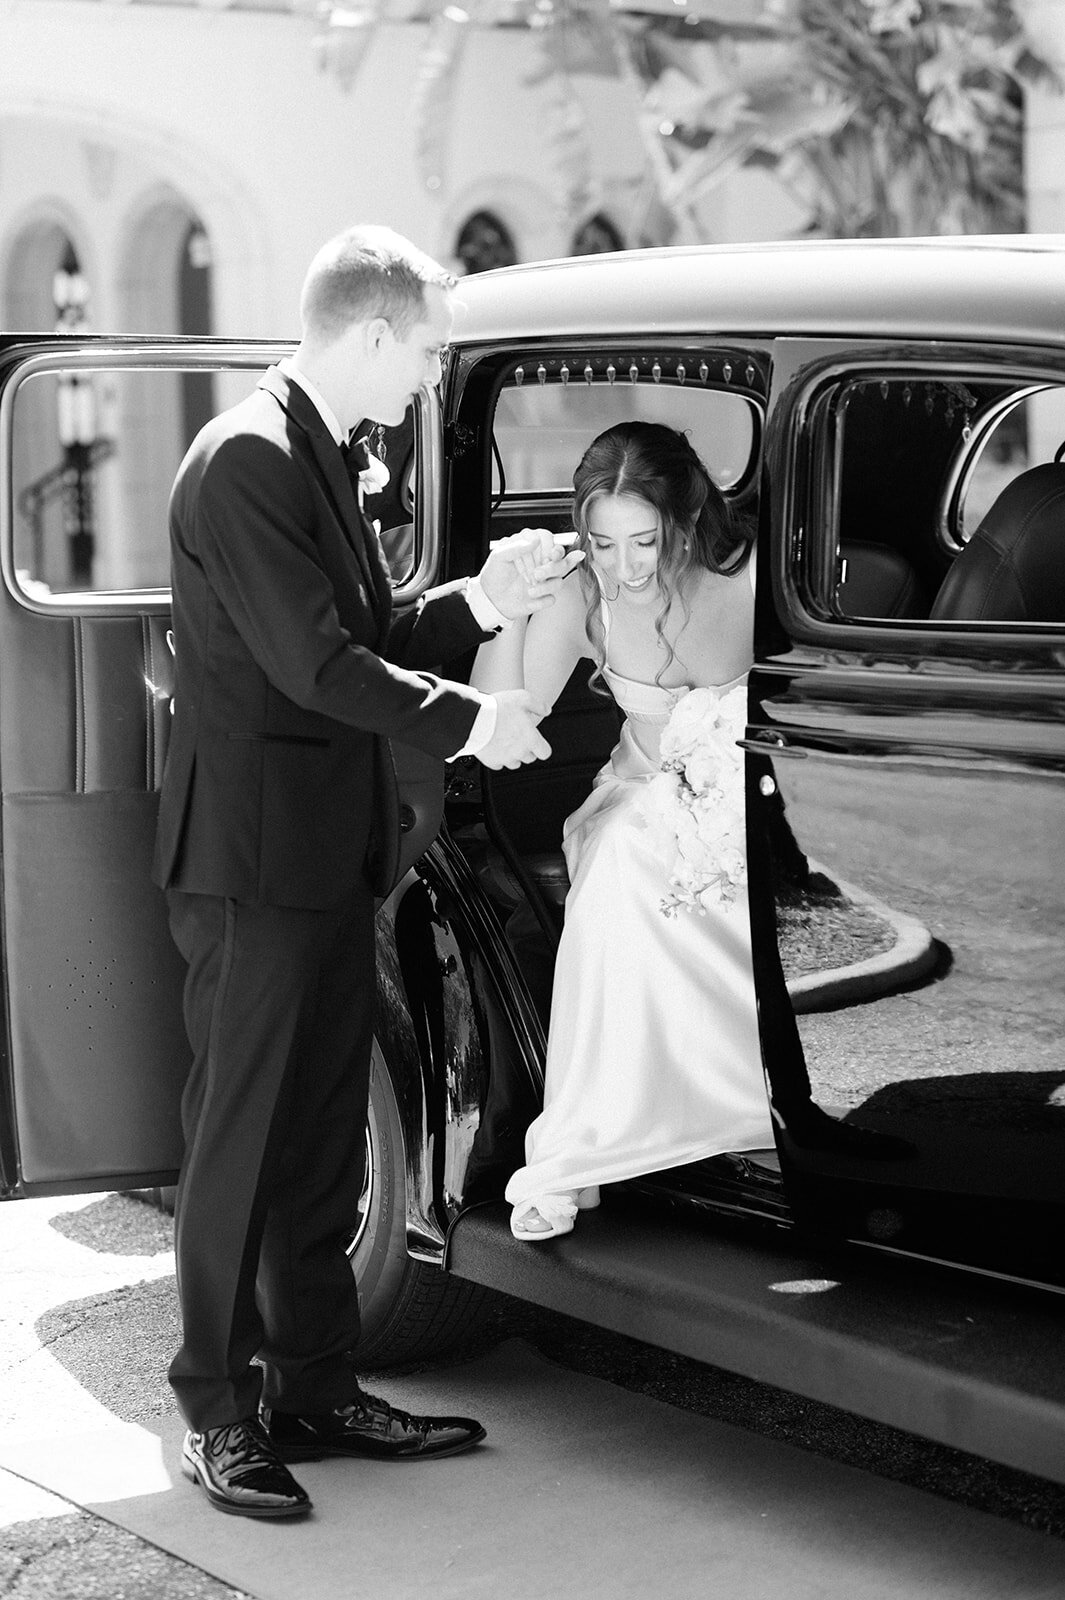 CORNELIA ZAISS PHOTOGRAPHY COURTNEY + ANDREW WEDDING 0461_websize